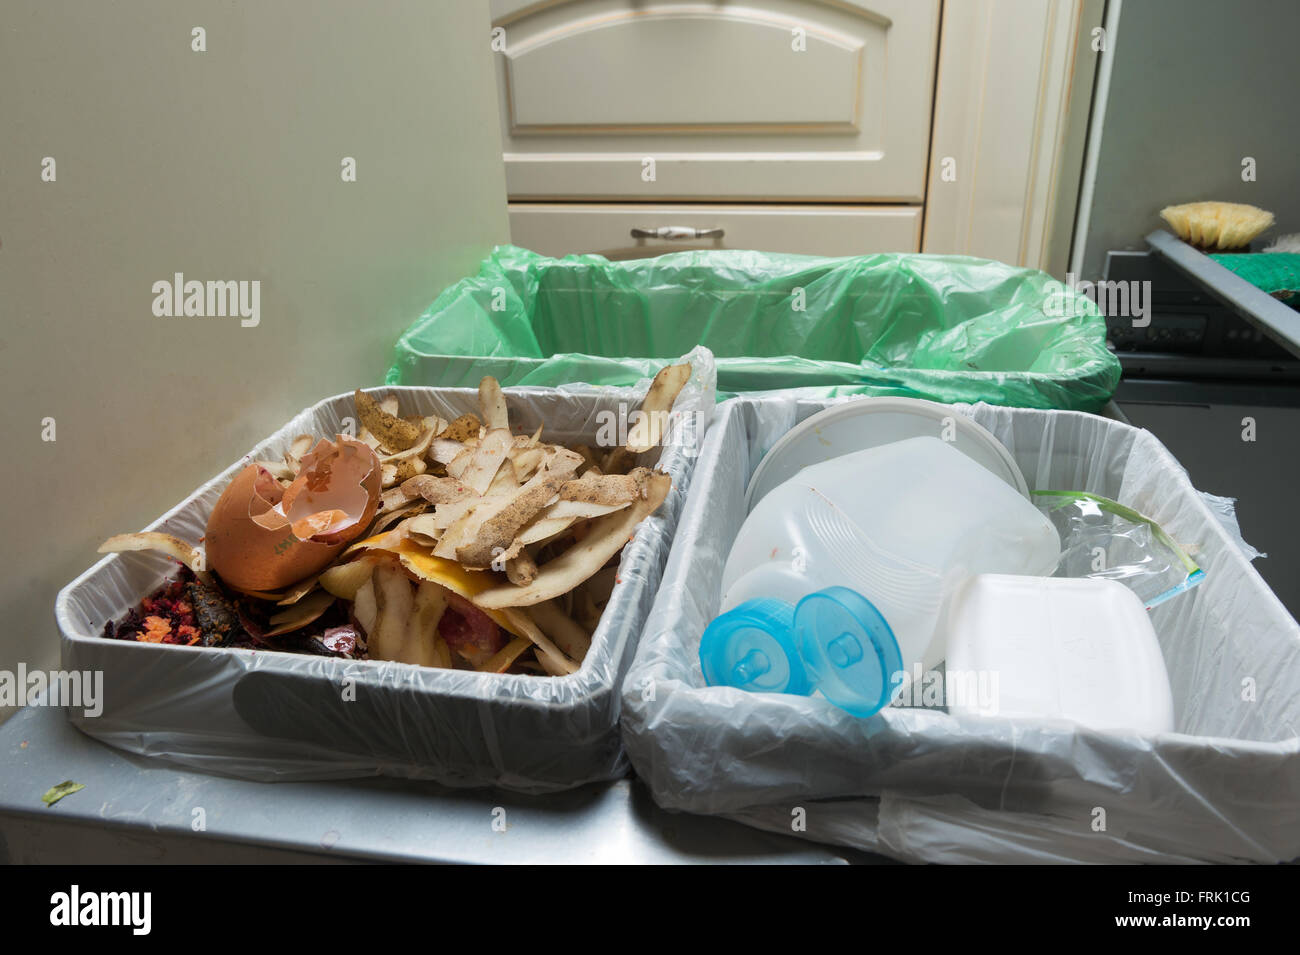 Hausmüll Sortierung und Verwertung Küche Behälter in der Schublade. Umweltbewusstes Verhalten, Ökologie Konzept. Stockfoto